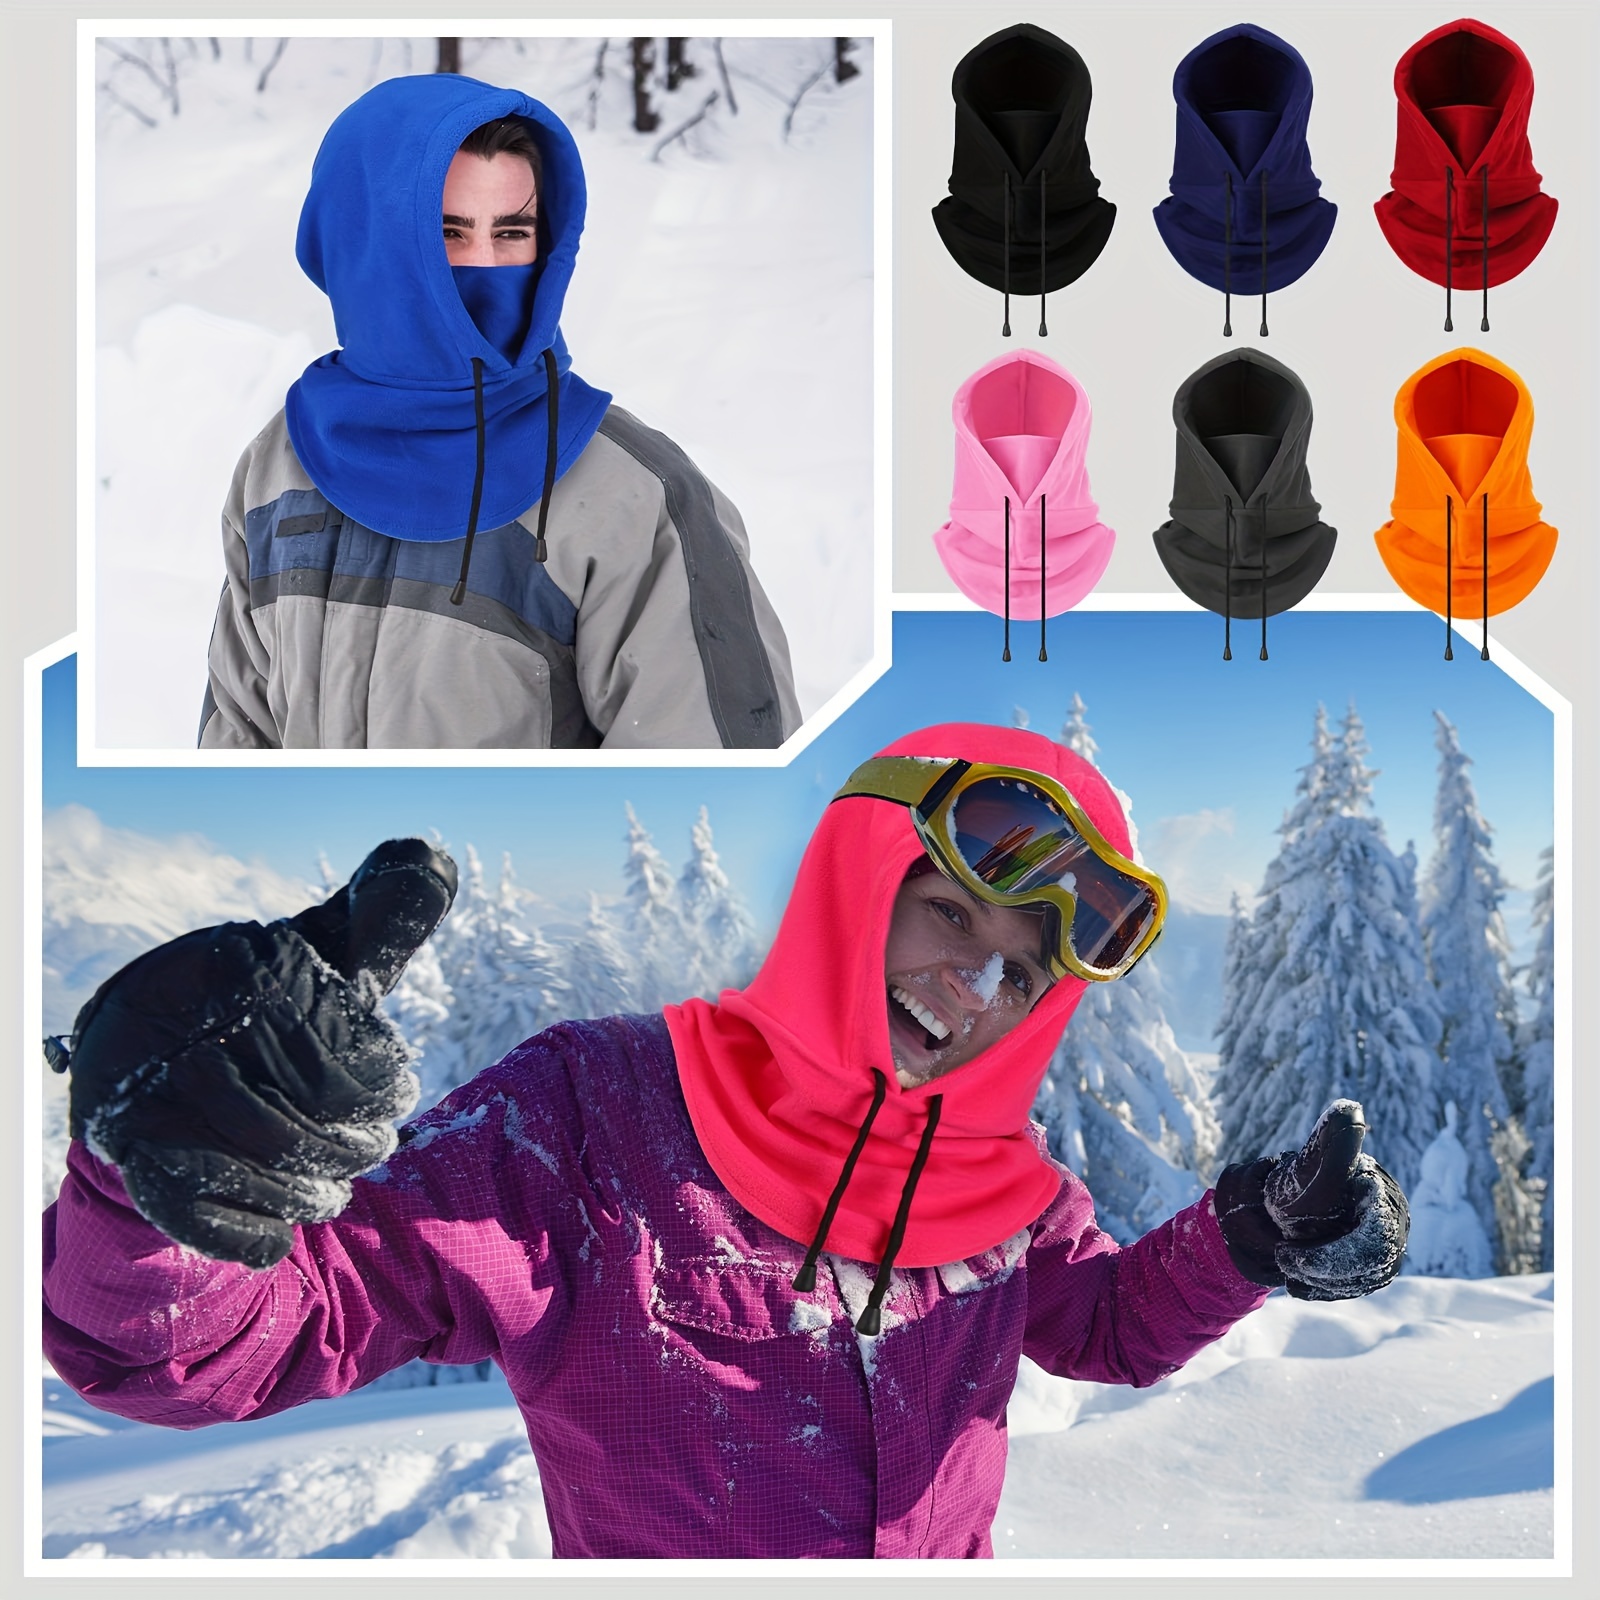 Masque de ski Polaire d'hiver Polaire thermique Cagoule Moto Vélo Masque  Facial Pour COURIR, Skier, Snowboard